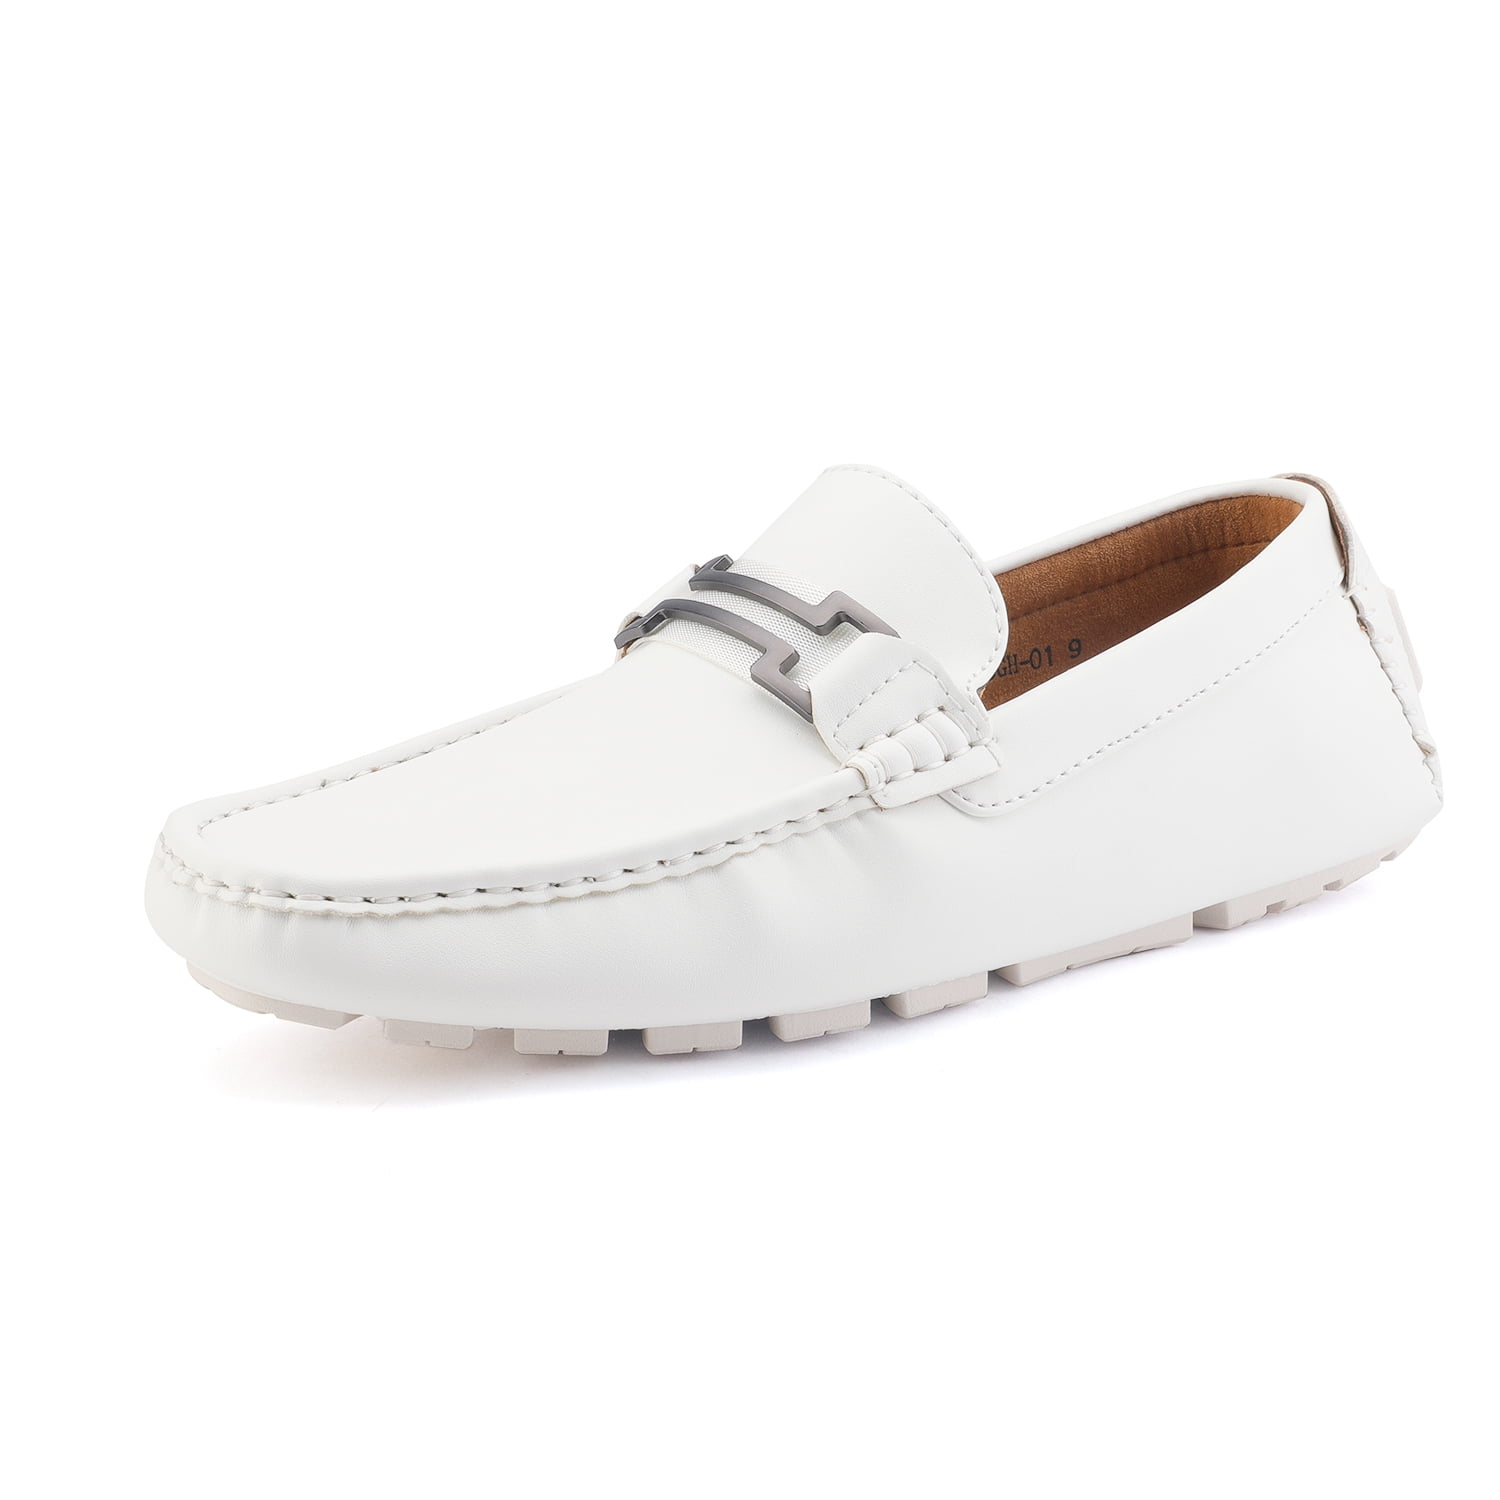 Bruno Marc Men's Moccasins Boat Shoes Lightweight Slip on Loafers